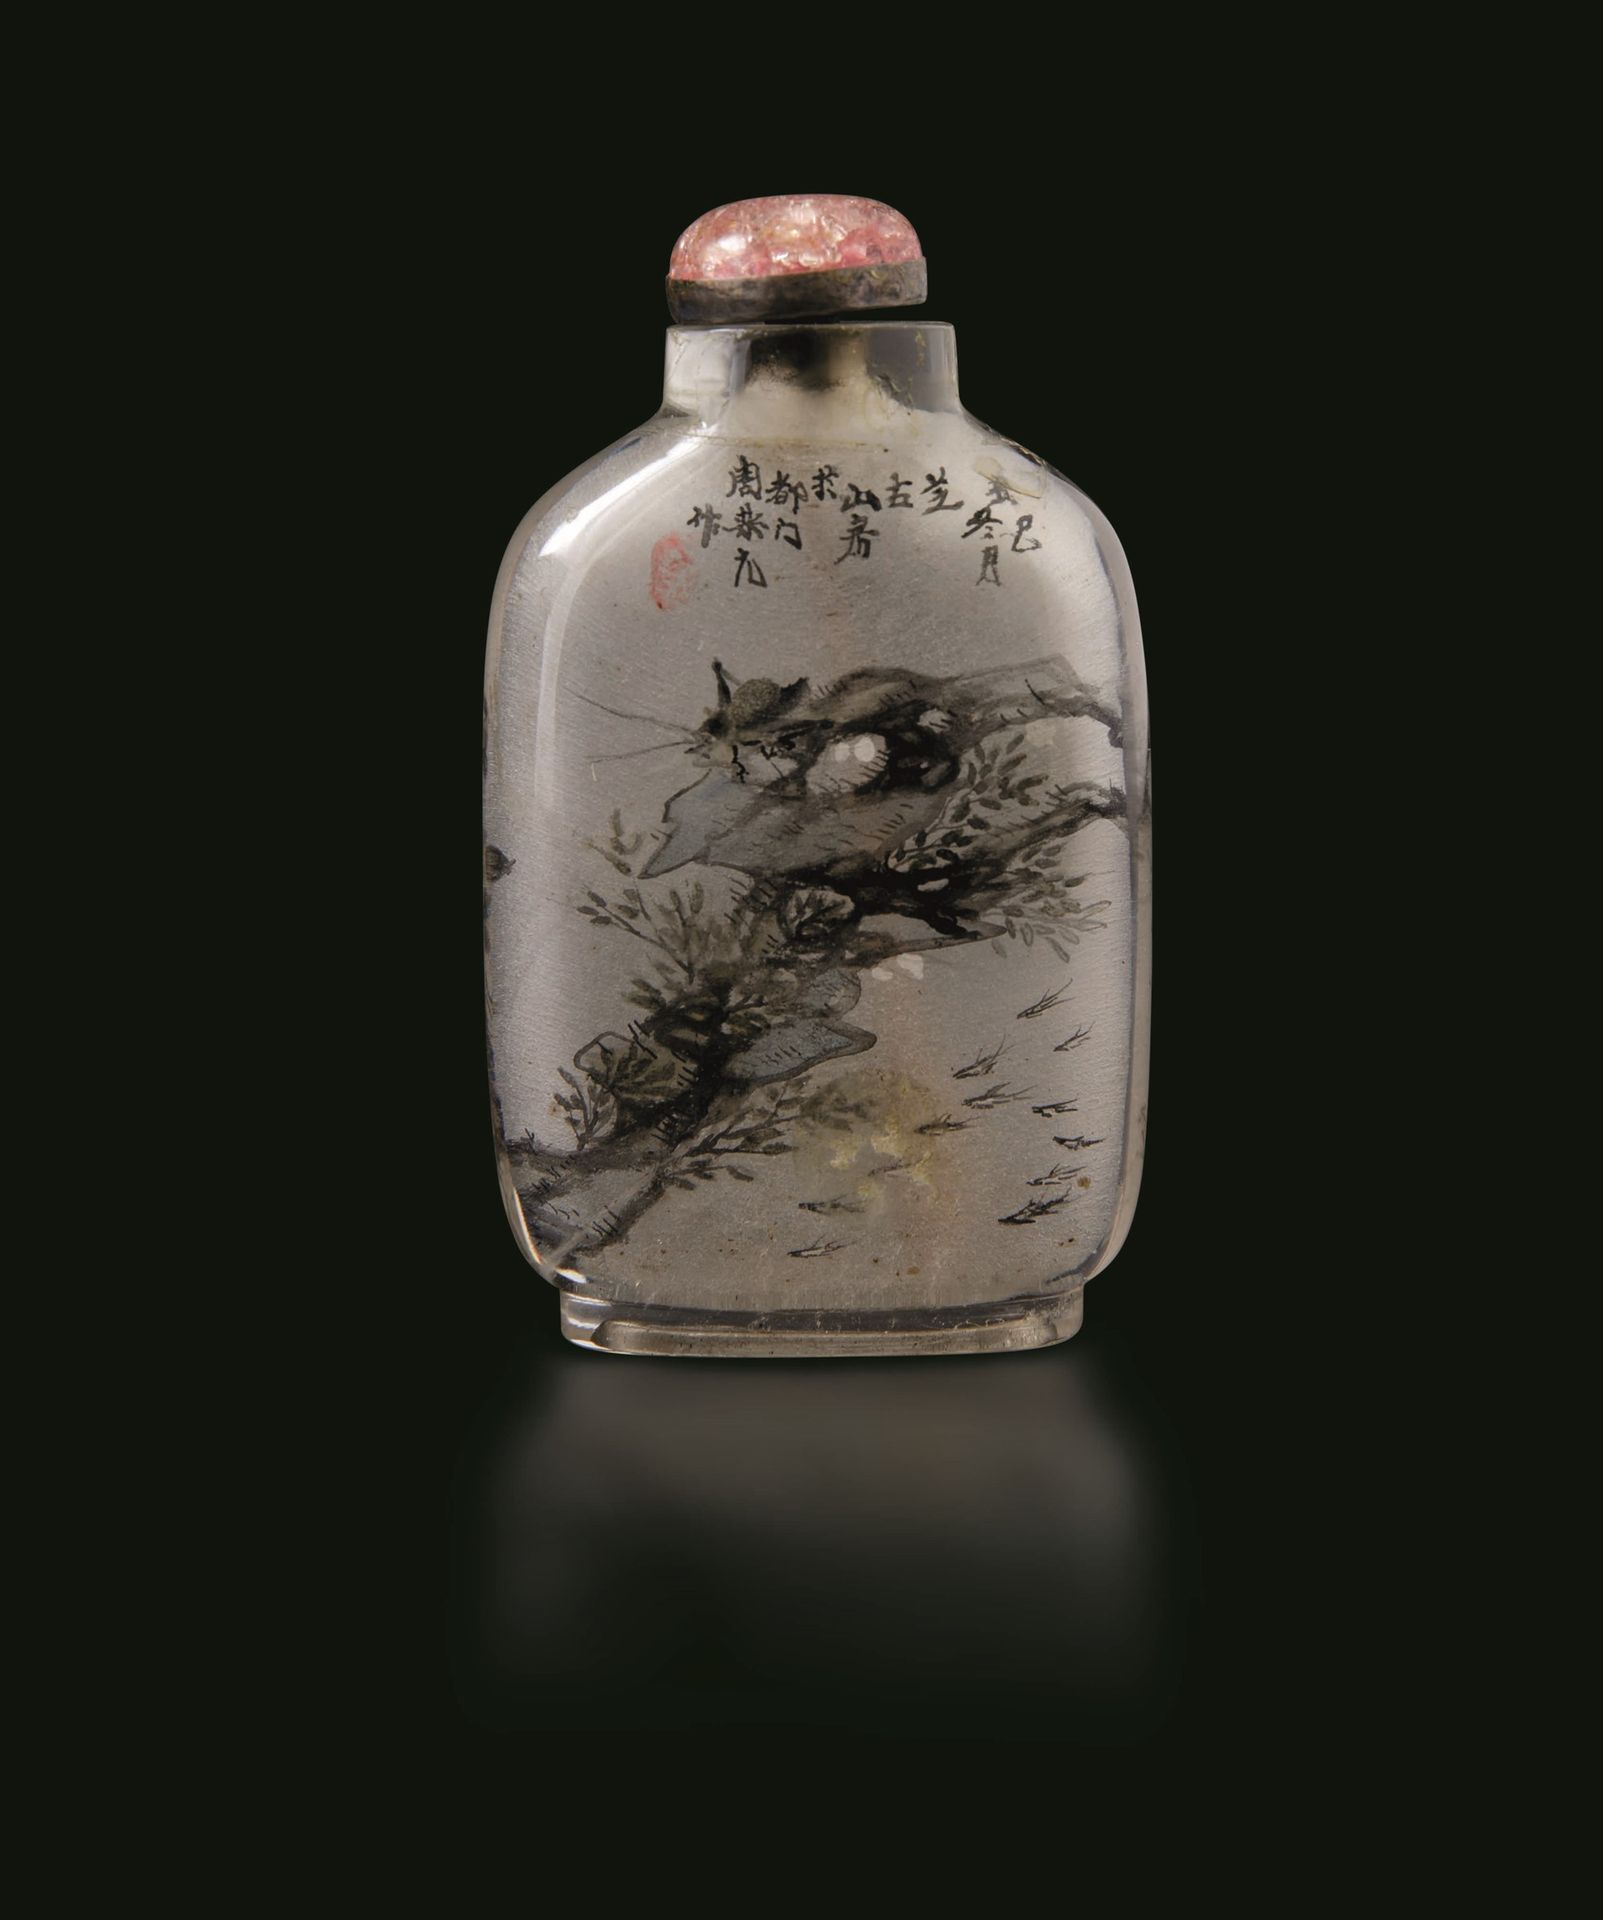 A glass snuff bottle, China, Republic, 1900s H 7cm